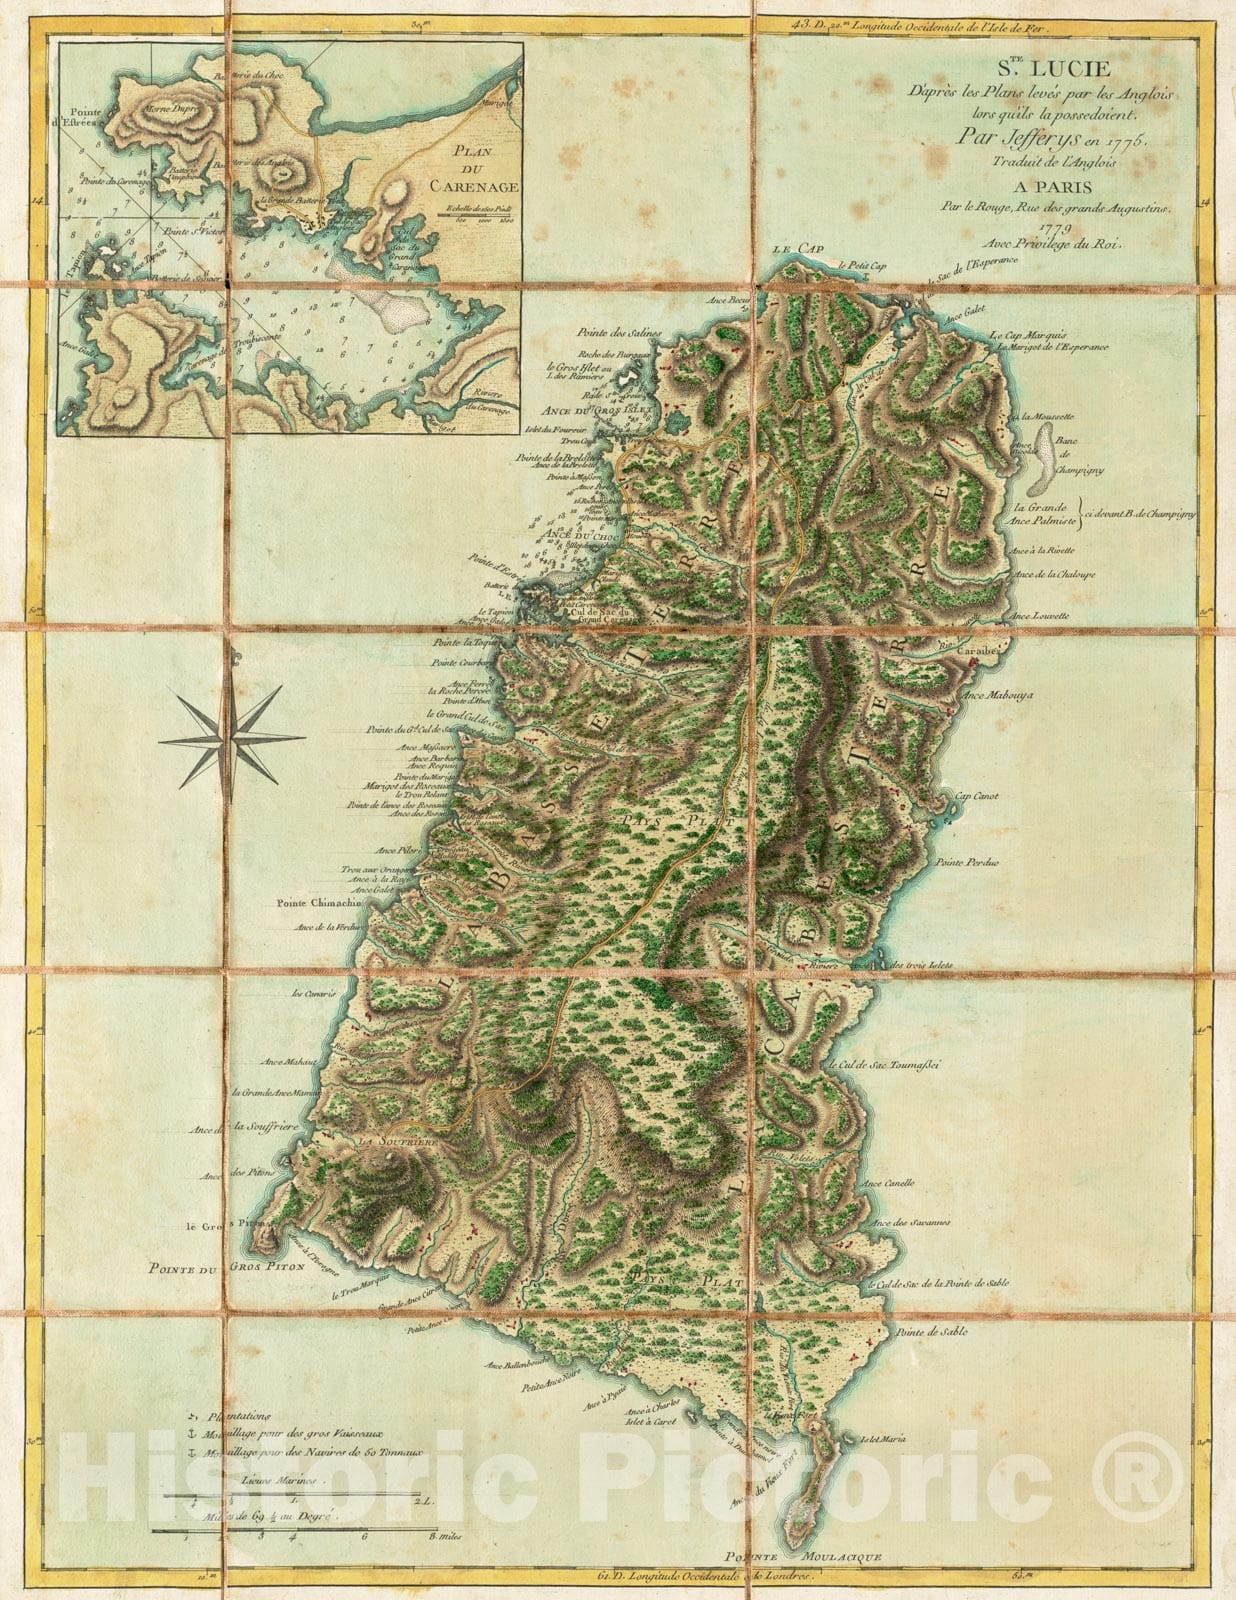 Historical Map, 1779 Ste. Lucie : d'apreI's les Plans leves par les Anglois lors qu'ils le possedoient, Vintage Wall Art